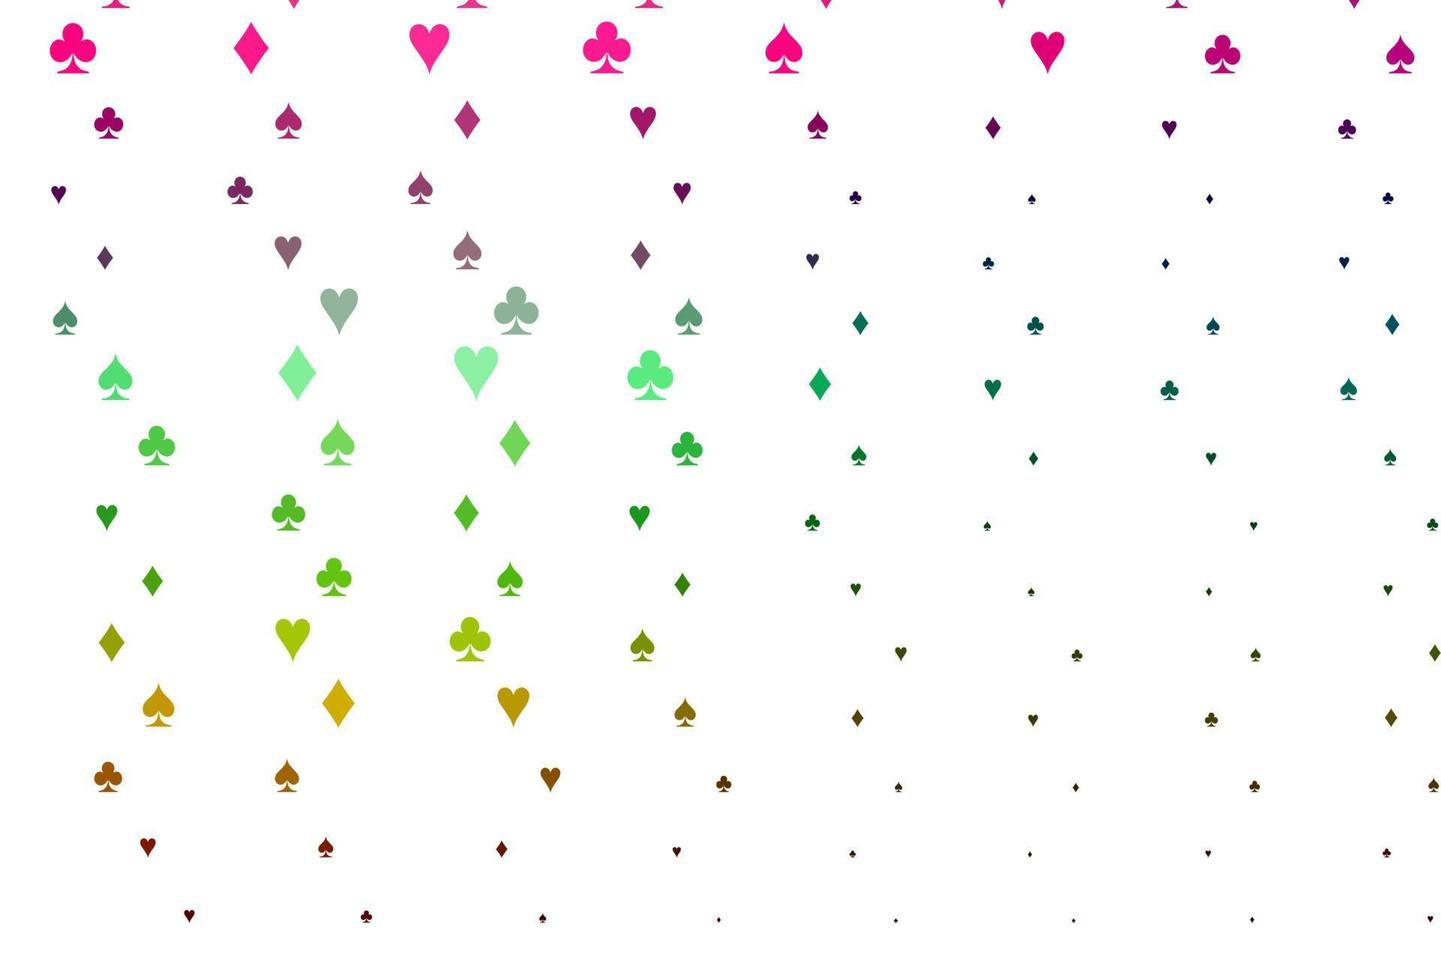 ljus mångfärgad, regnbågsvektormall med pokersymboler. vektor